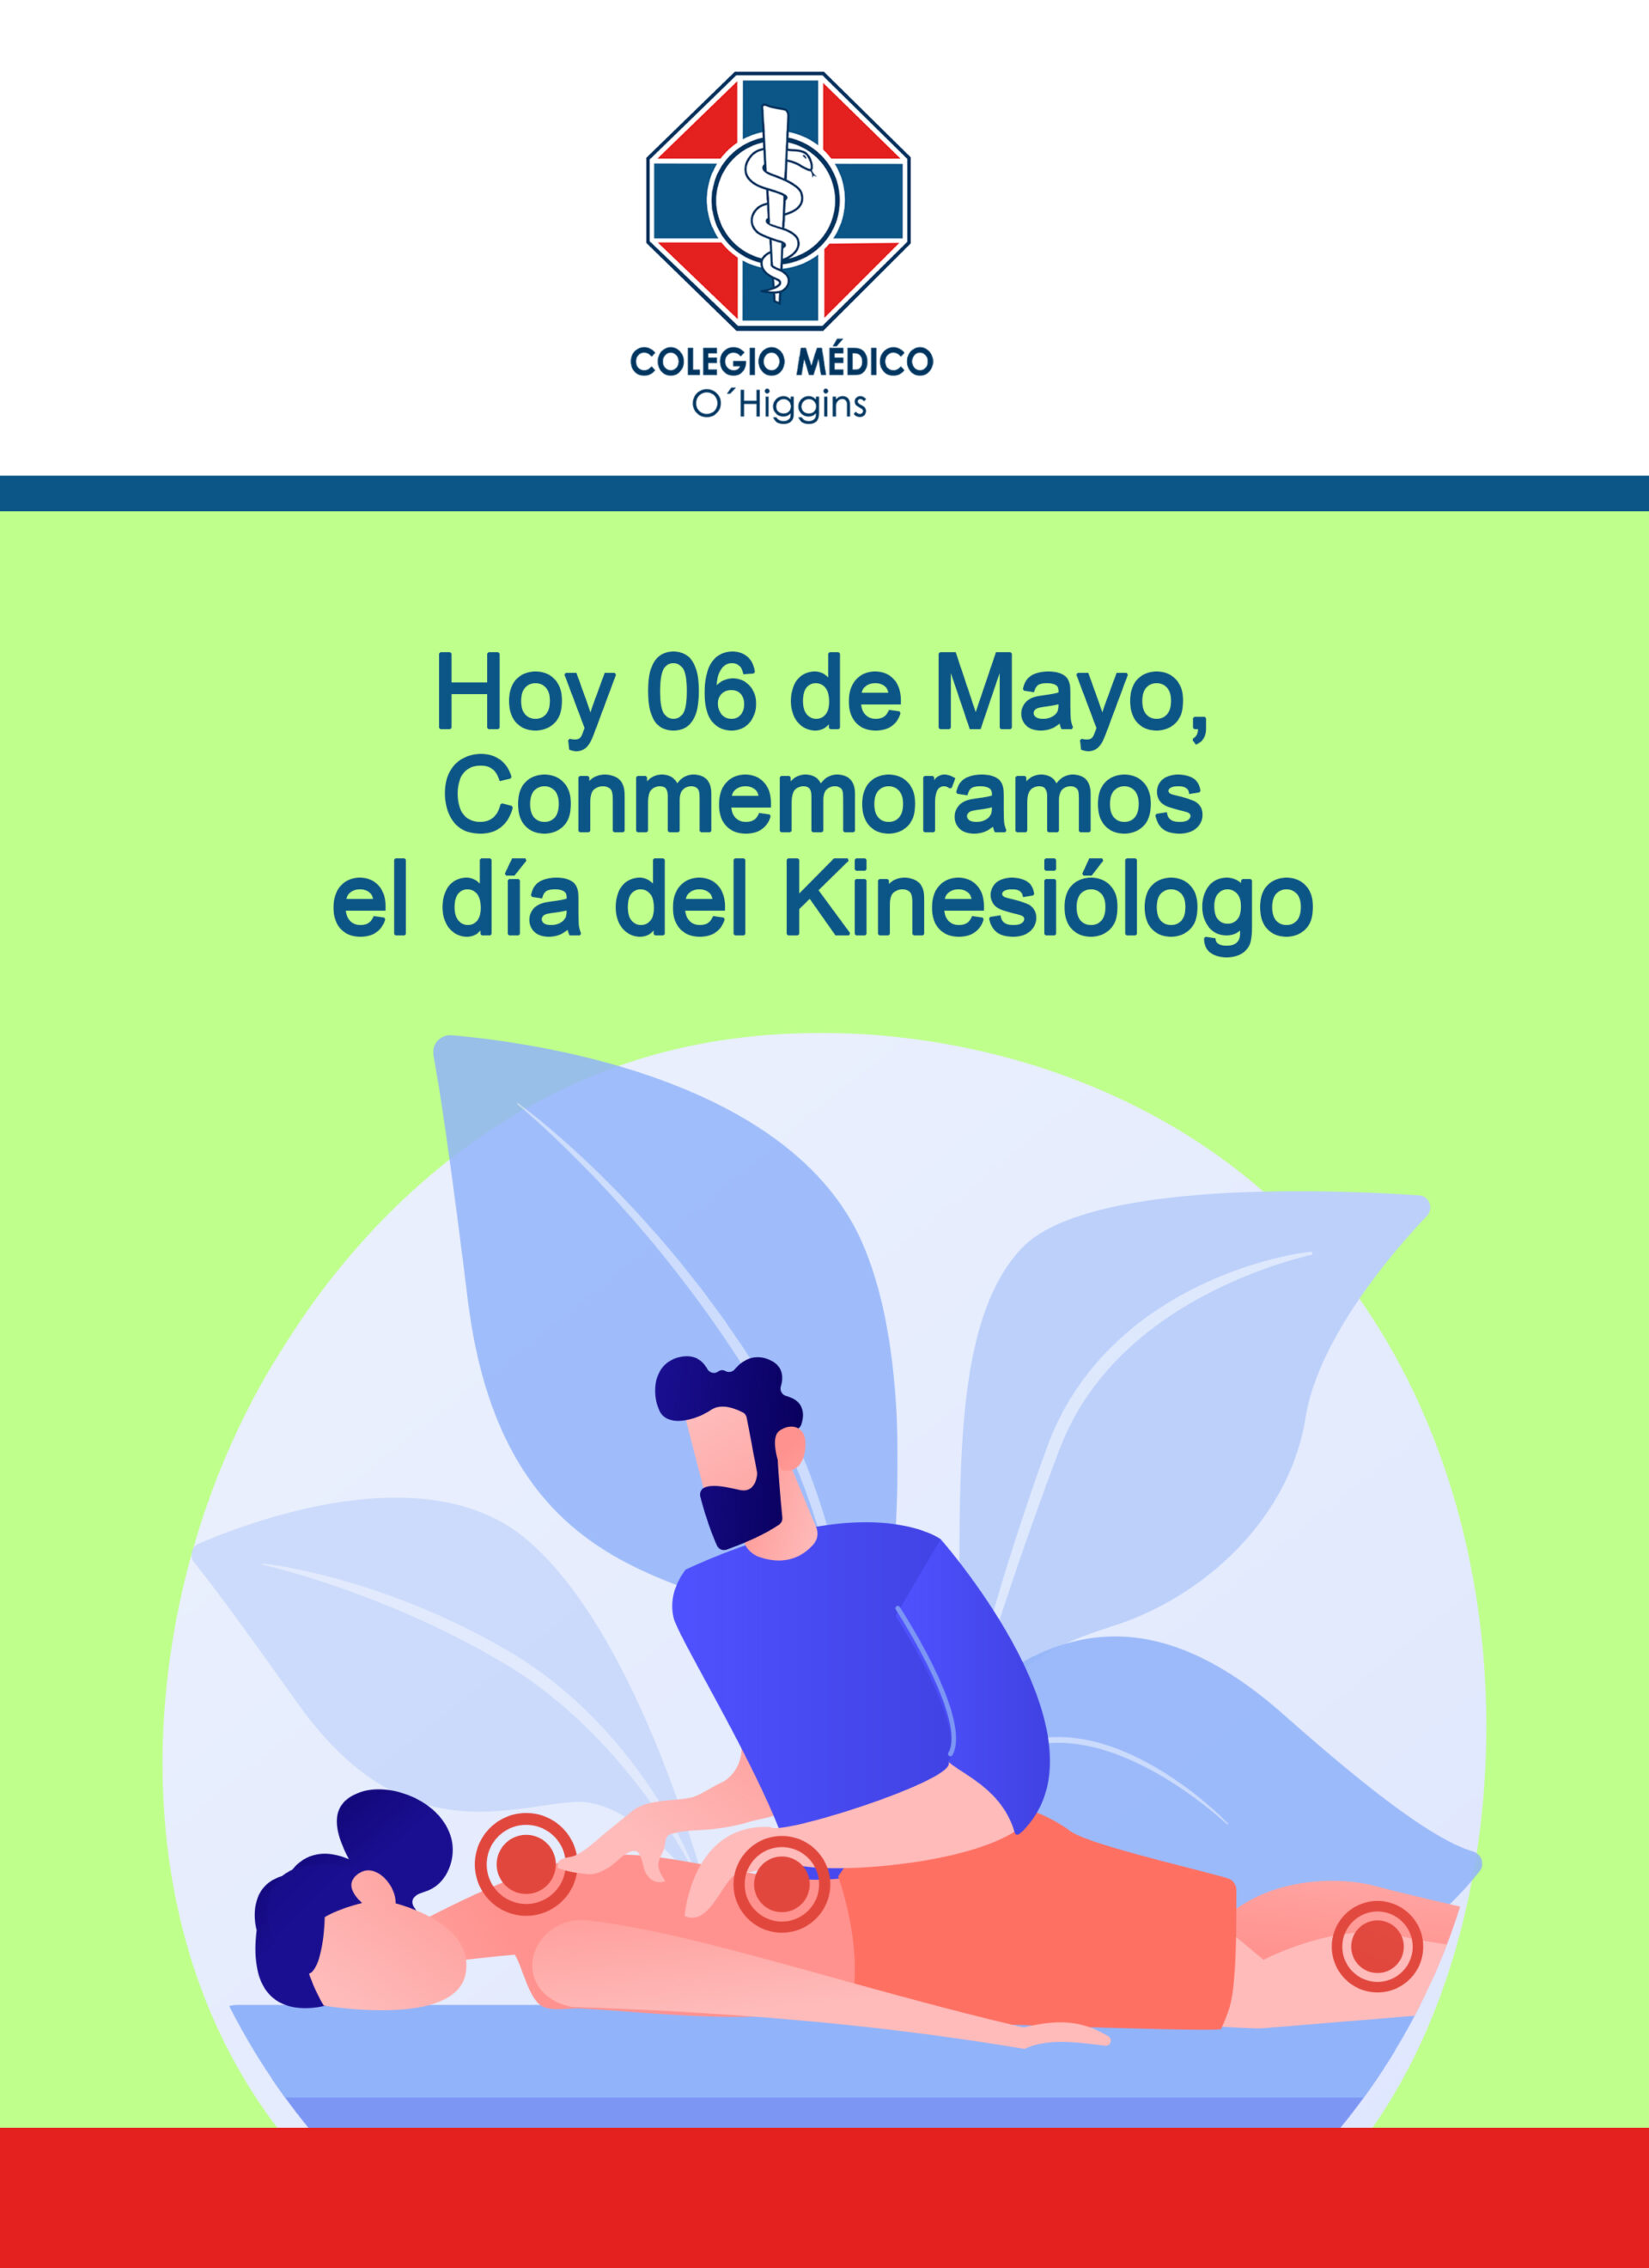 Hoy 06 de mayo celebramos el día del Kinesiólogo Colegio Médico O'Higgins